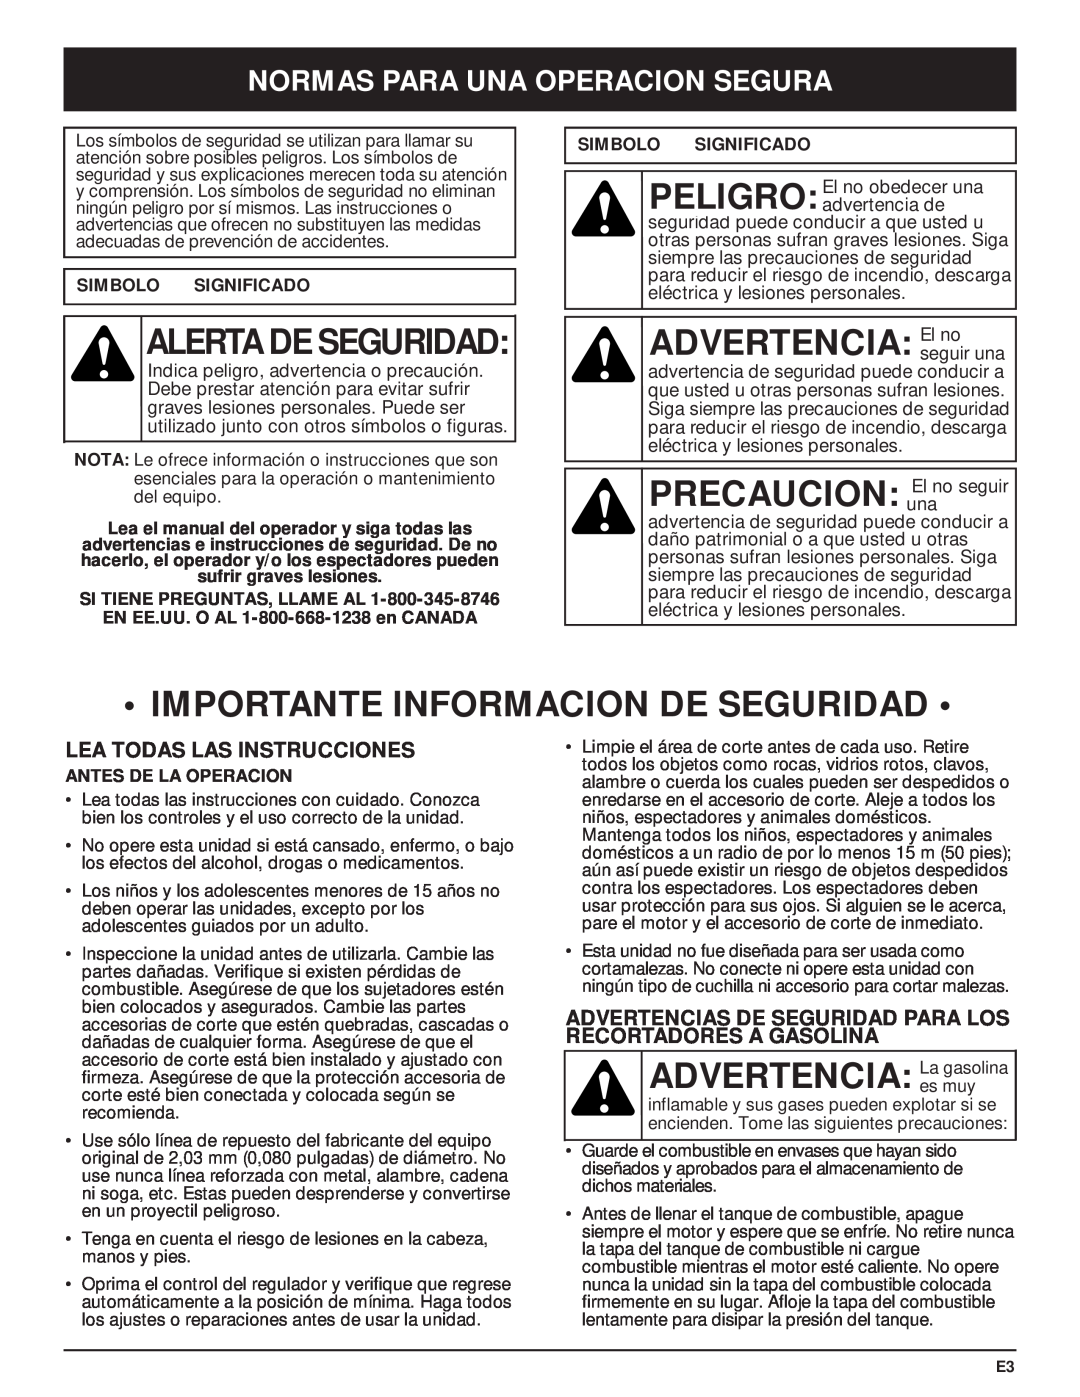 MTD Y28 manual Importante Informacion De Seguridad, ADVERTENCIA Laes muygasolina, Normas Para Una Operacion Segura 